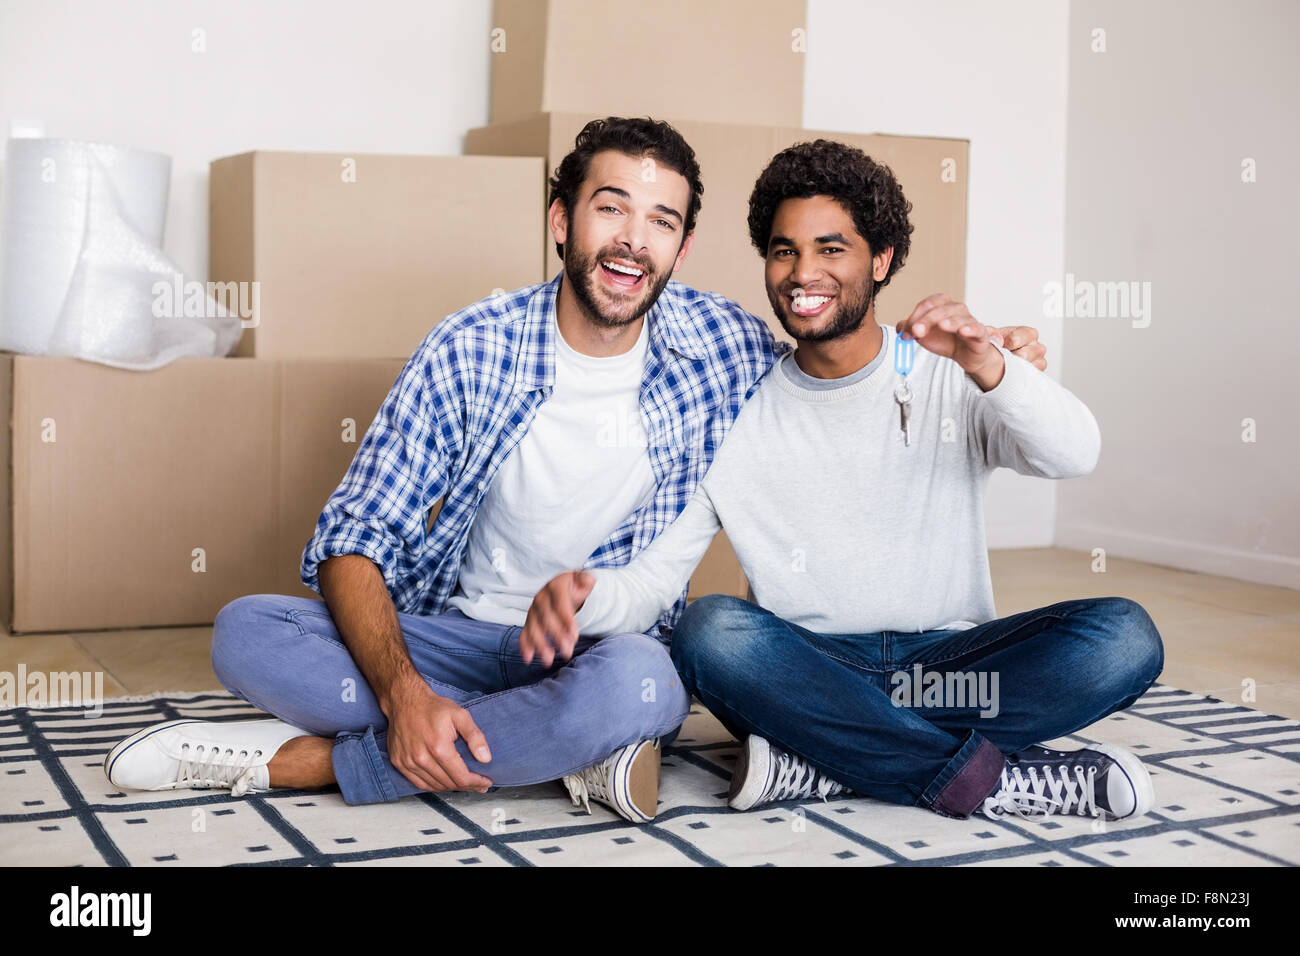 Happy gay couple holding nouvelles clés de maison sitting on floor Banque D'Images